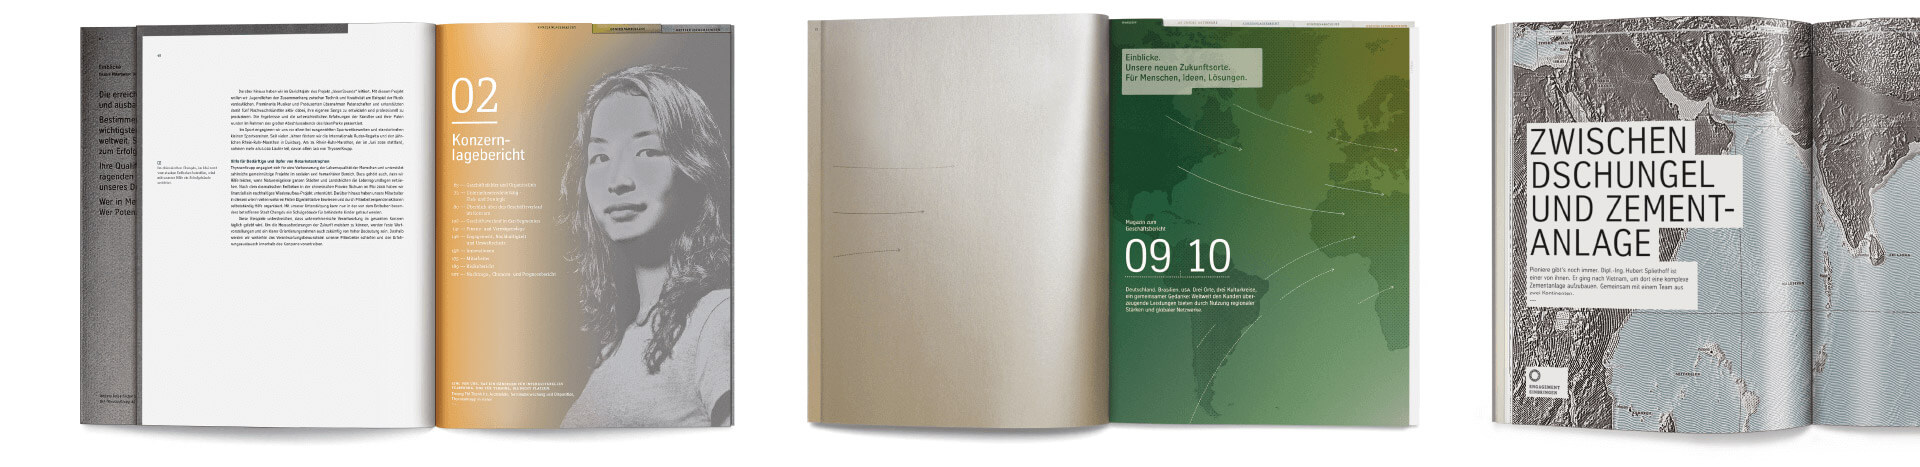 Seiten aus den Geschäftsberichten von ThyssenKrupp mit einem Kopf einer Frau, Typografie und Landkarten